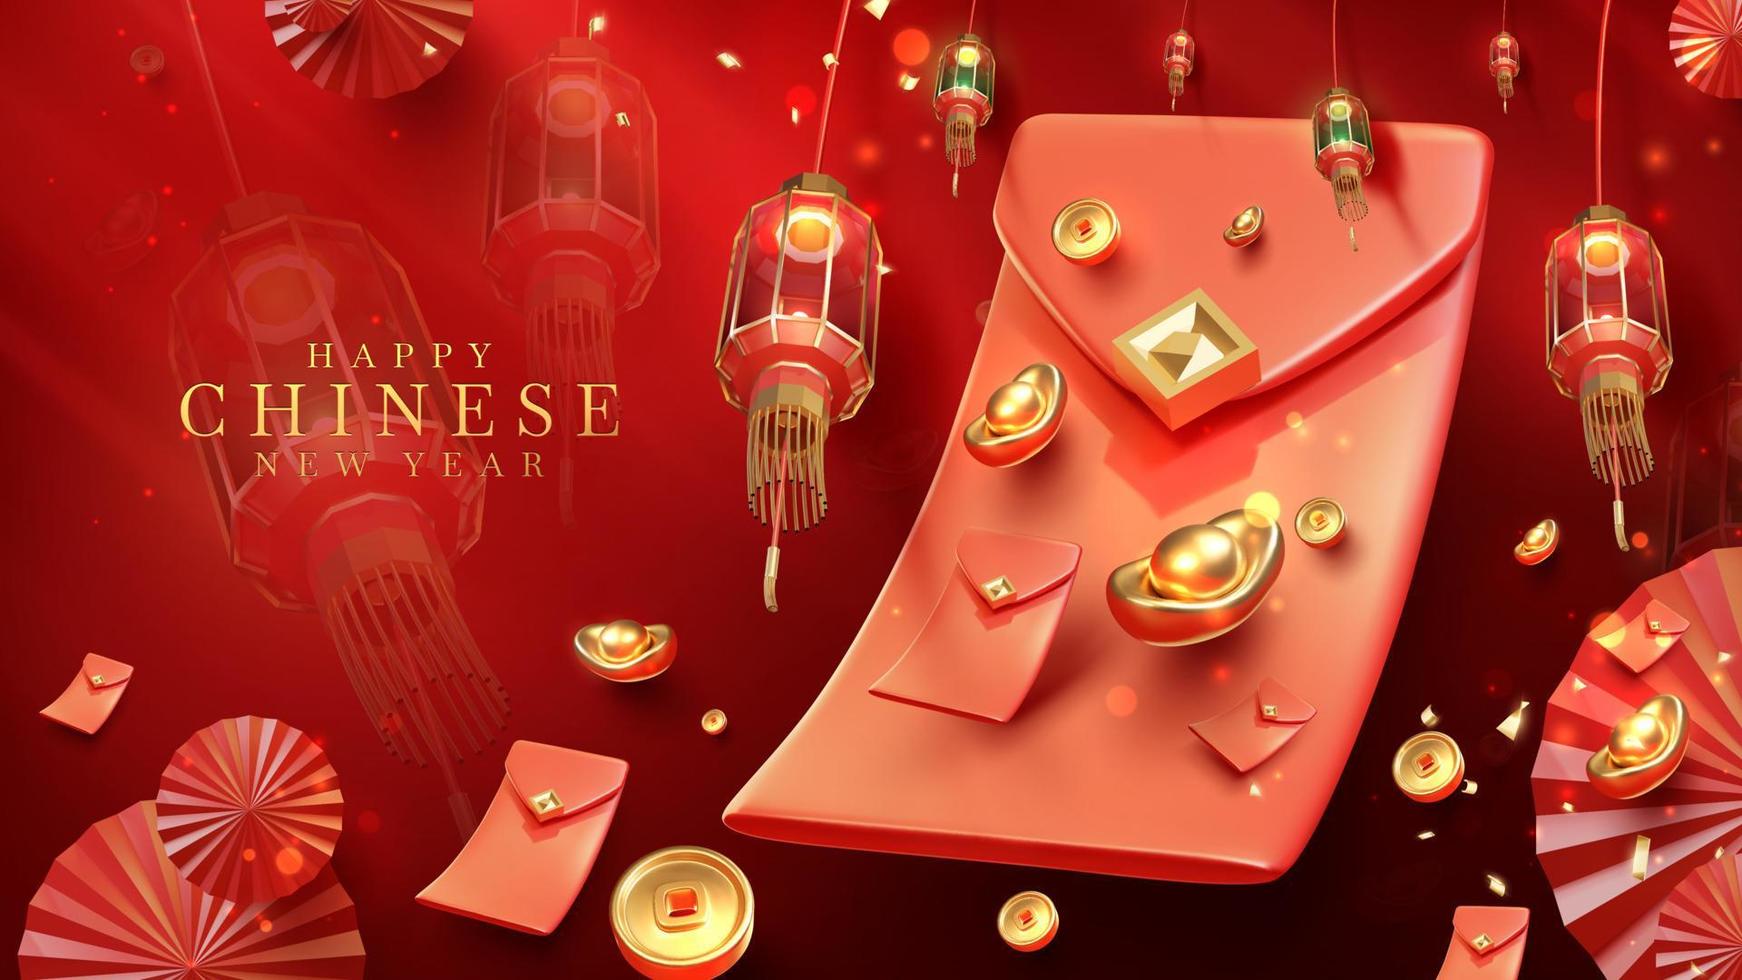 fundo de estilo de luxo vermelho com ornamentos 3d realistas do ano novo chinês com decorações de efeito de luz e bokeh. vetor